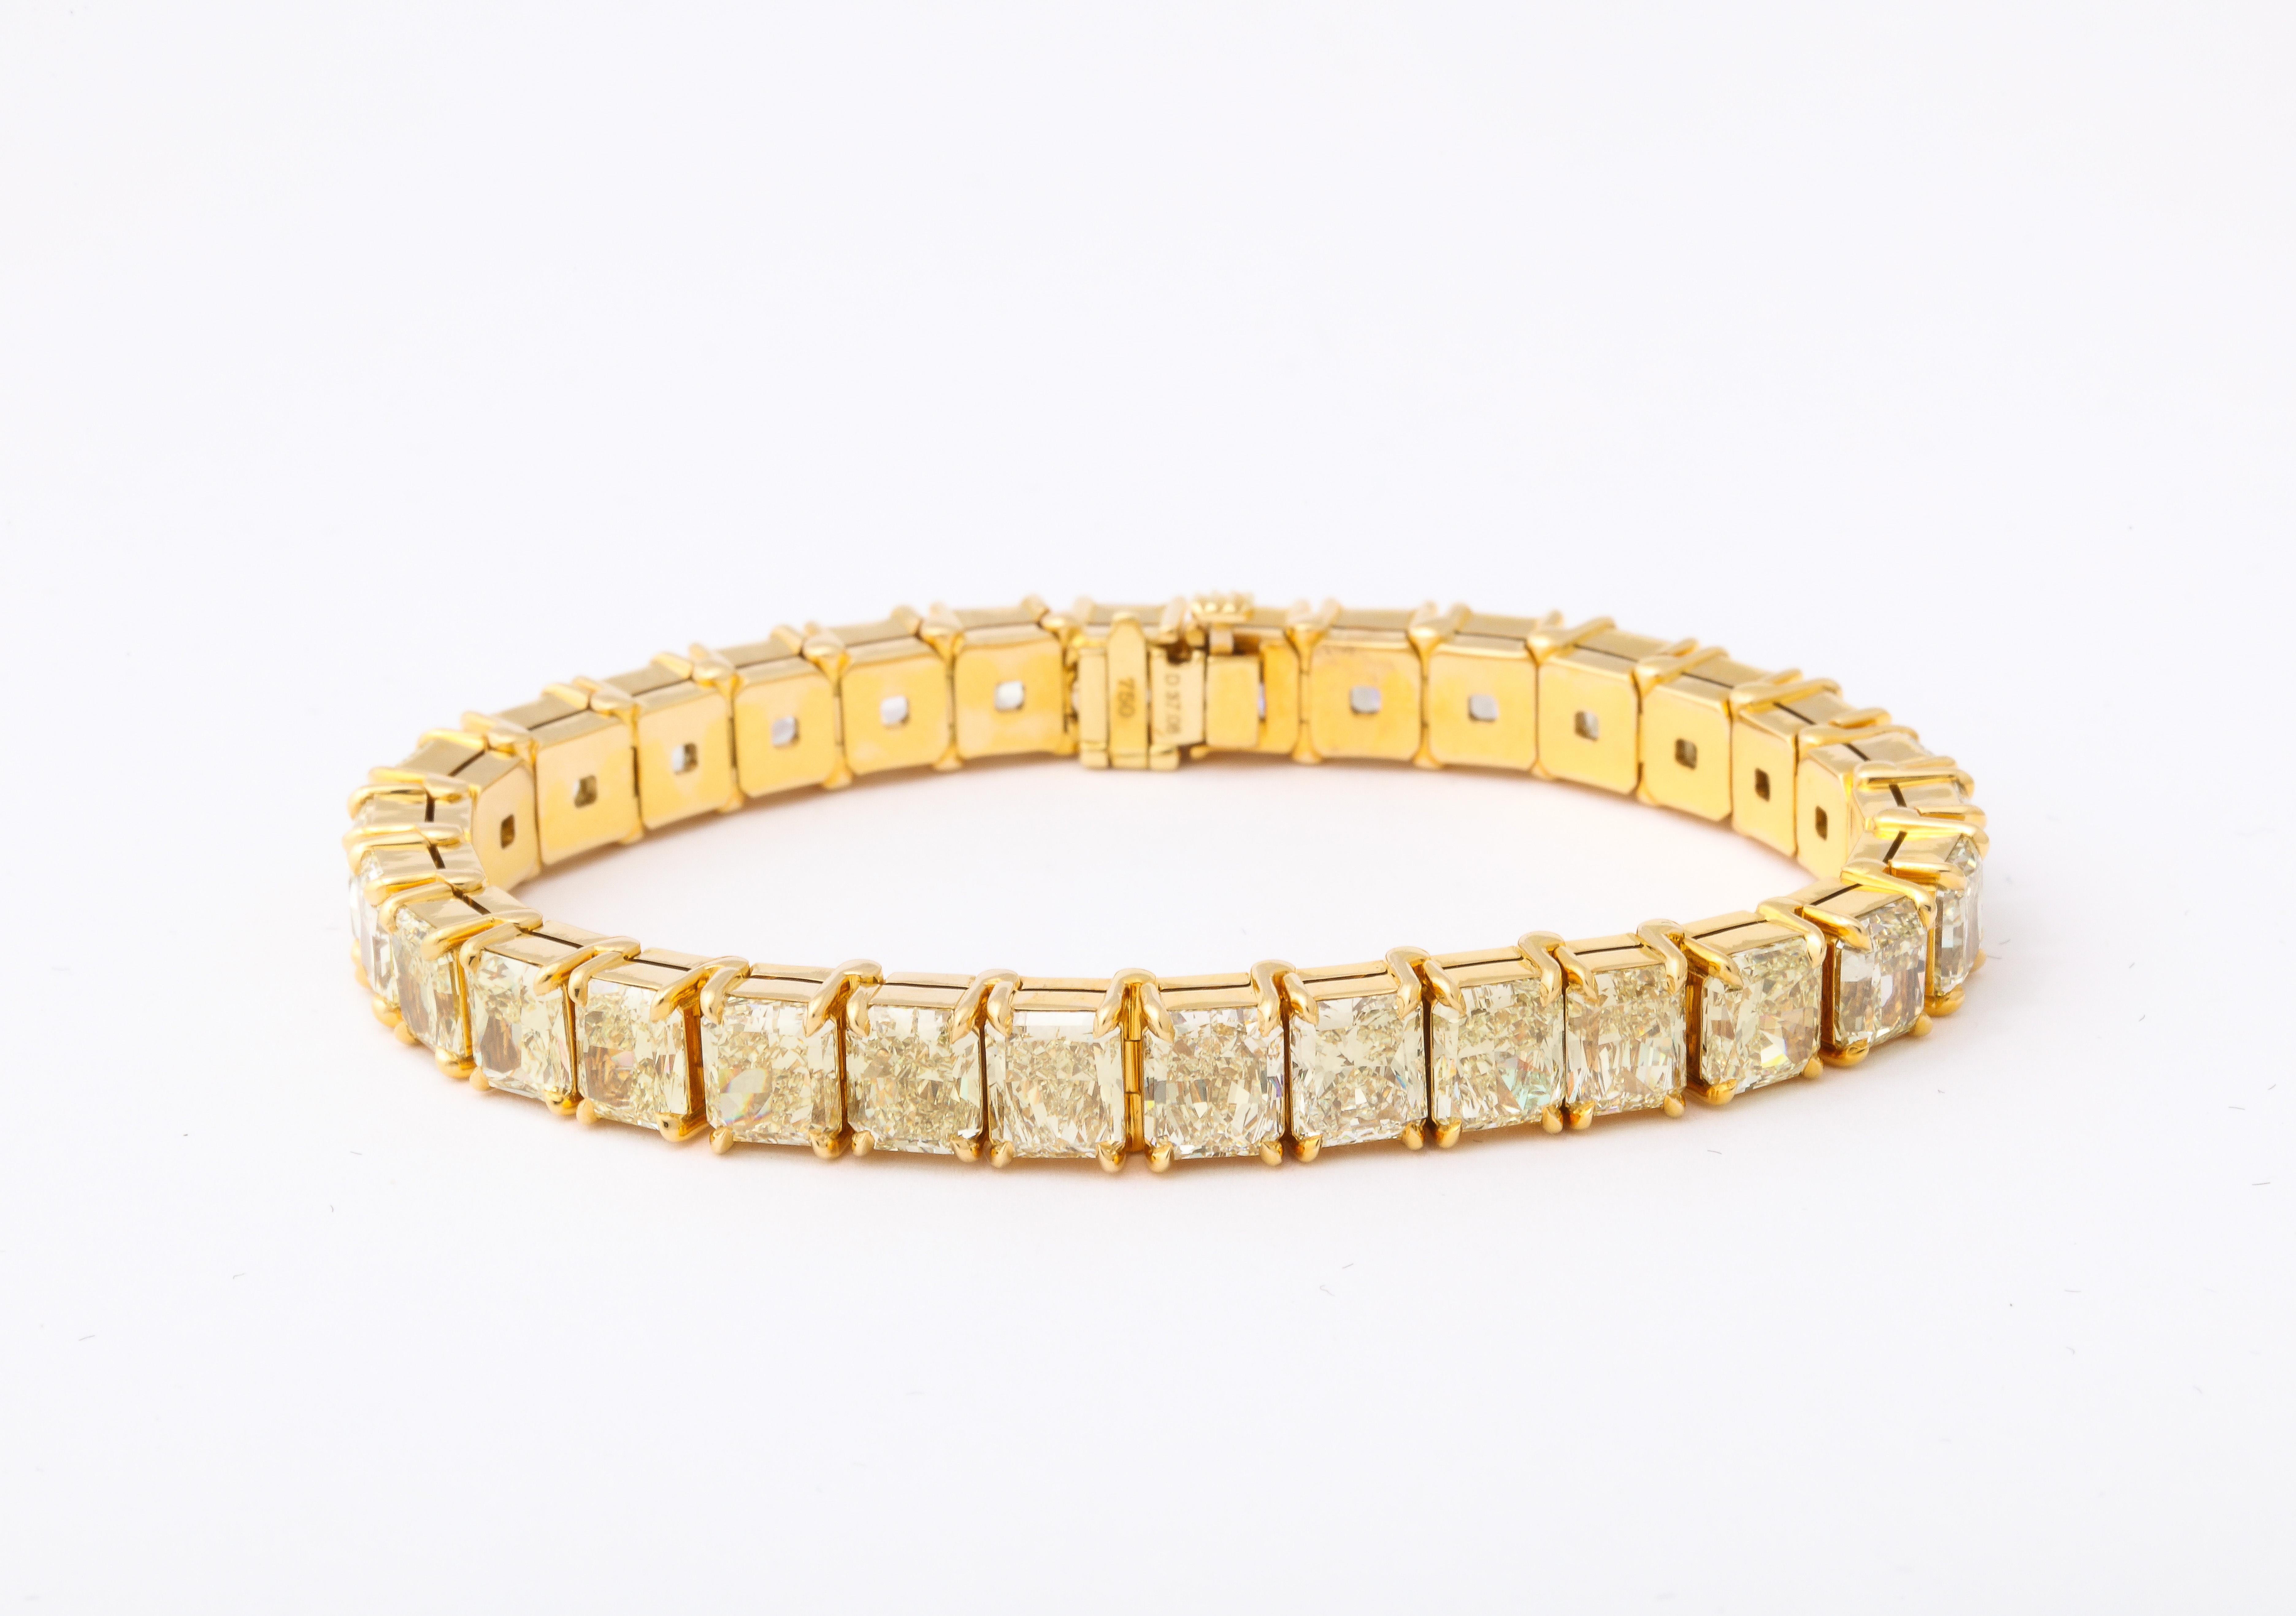 
Ein SPECTACULAR-Armband! 

37.08 Karat gelbe Diamanten im Brillantschliff, gefasst in 18 Karat Gelbgold. 

30 Diamanten insgesamt - jeder Stein hat durchschnittlich über 1 Karat! 

7 Zoll Länge 

7.8 mm an seiner breitesten Stelle.  